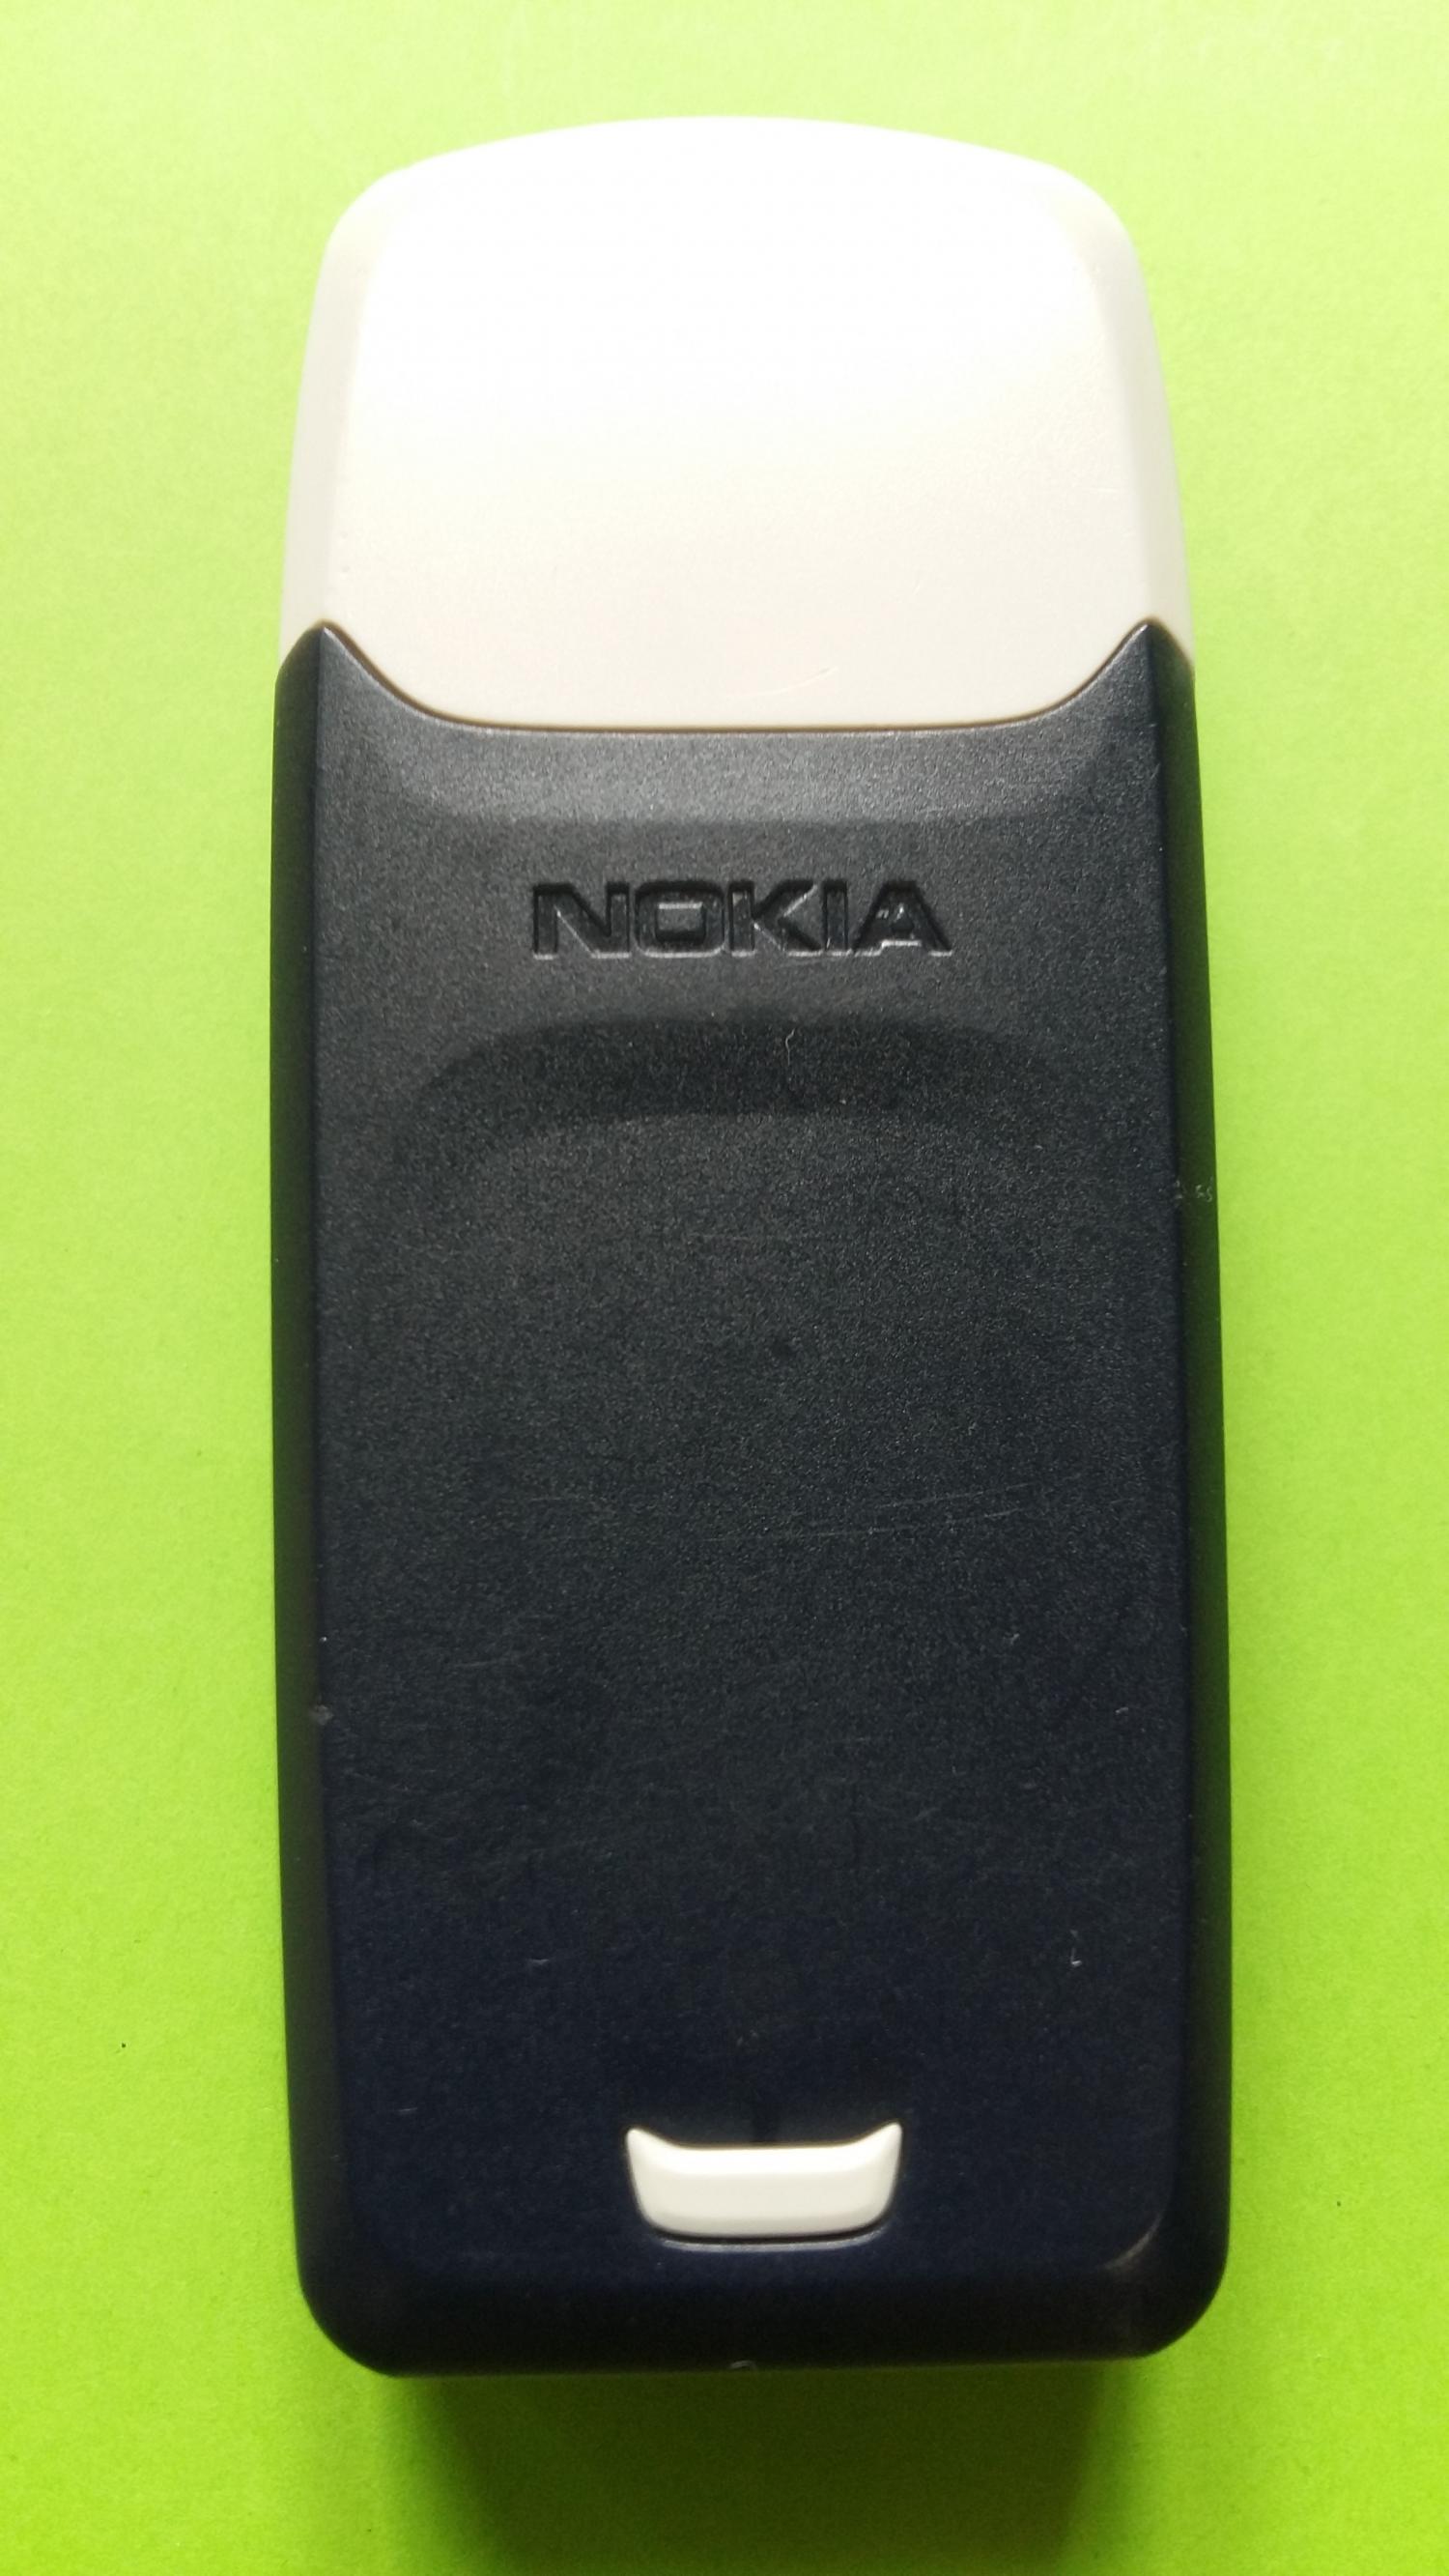 image-7321130-Nokia 3100 (2)2.jpg